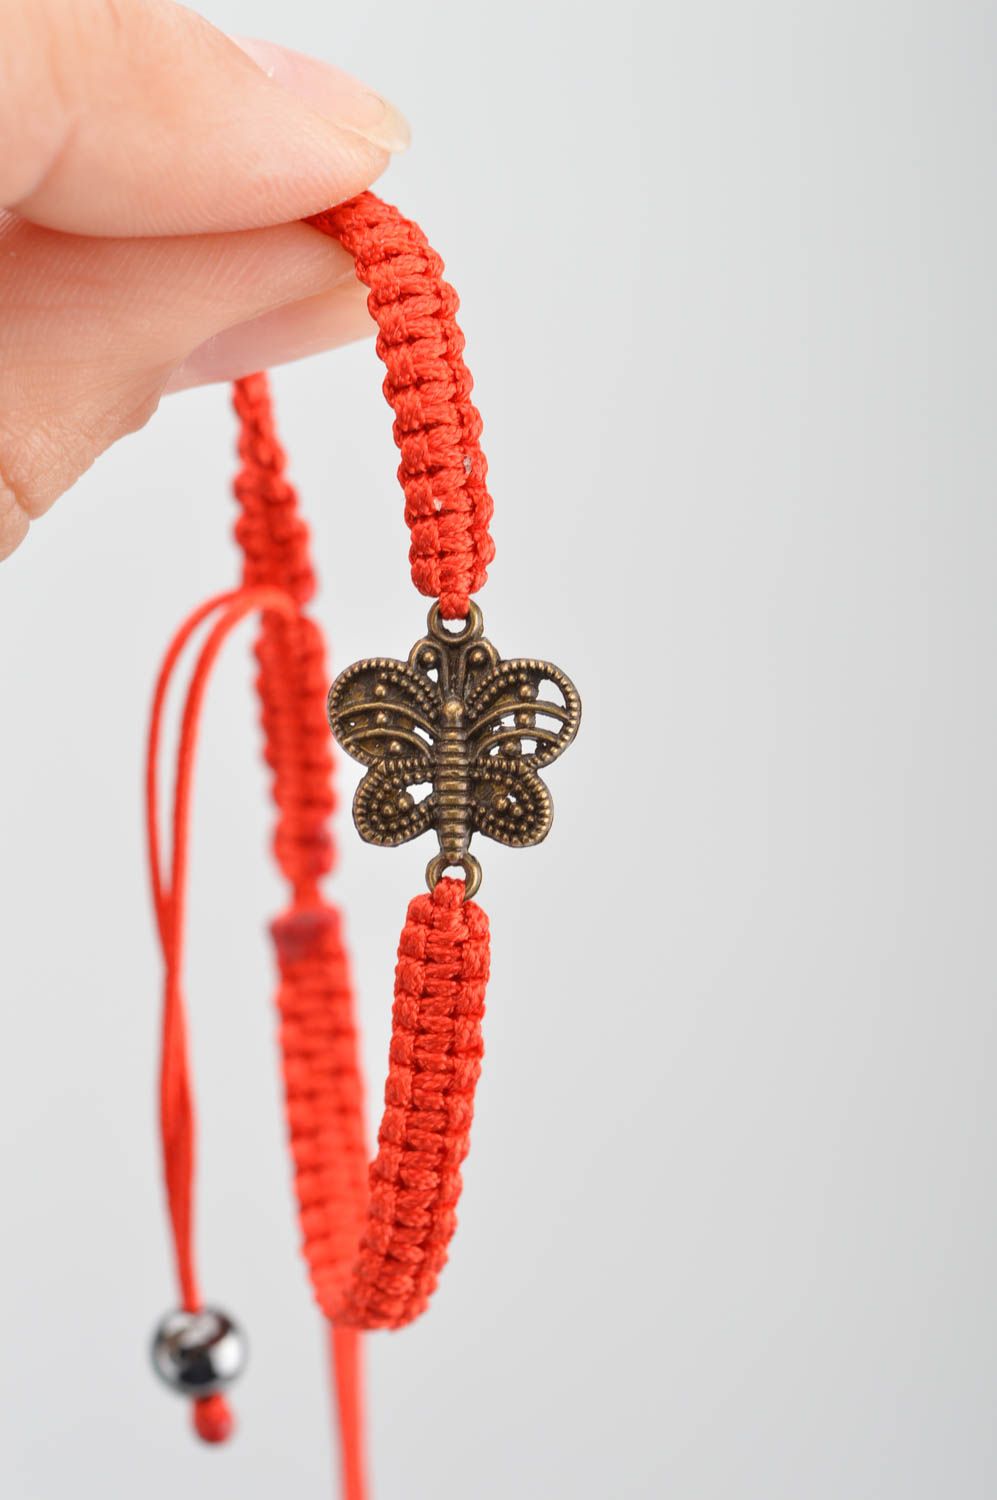 Тонкий плетеный браслет из ниток на руку красный с бабочкой ручной работы  фото 3